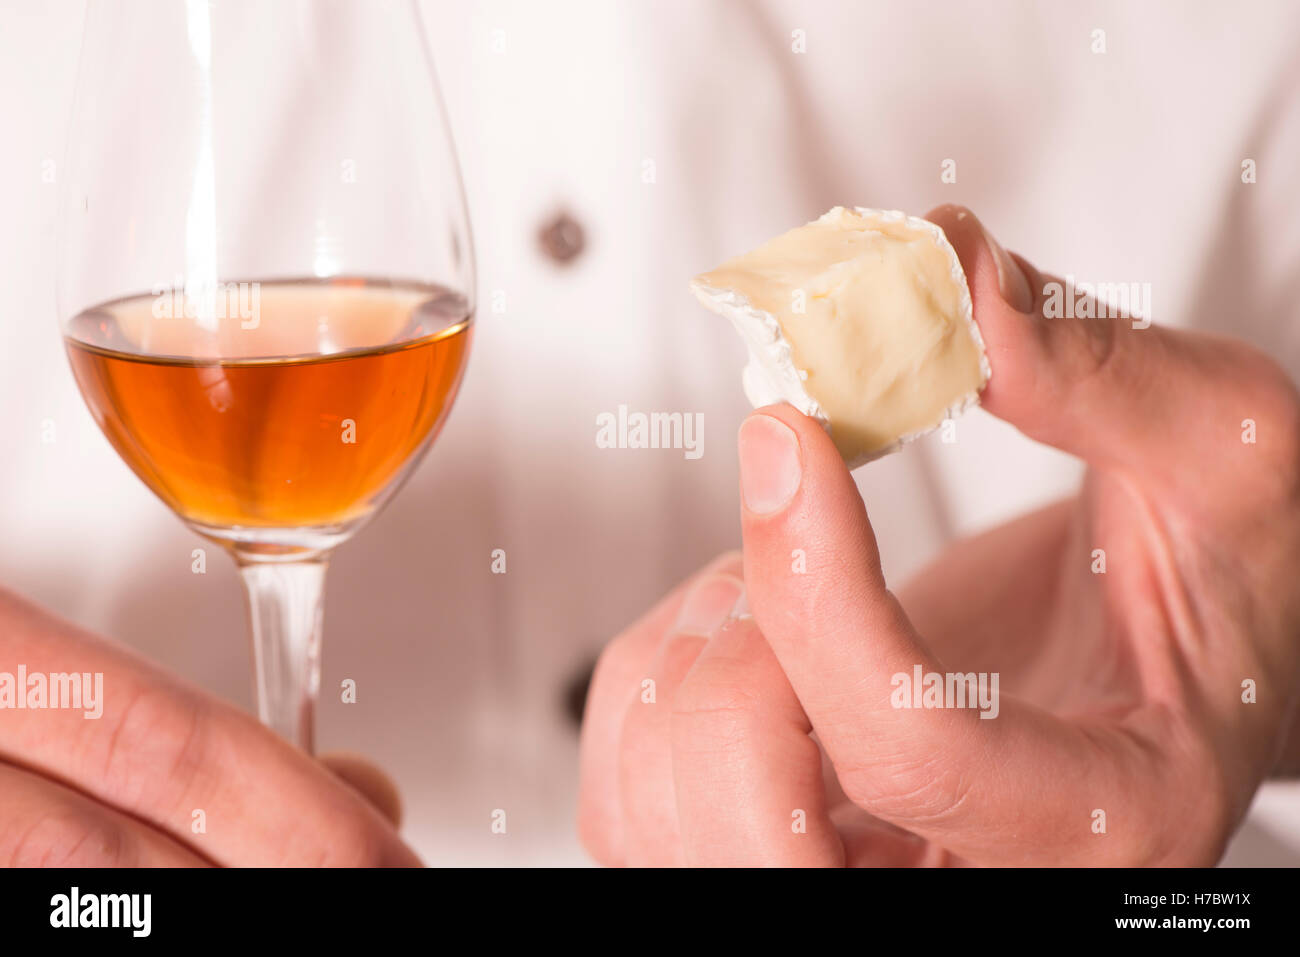 Dans un verre de sherry et main tenant un morceau de fromage brie. Snack ou apéritif. Banque D'Images